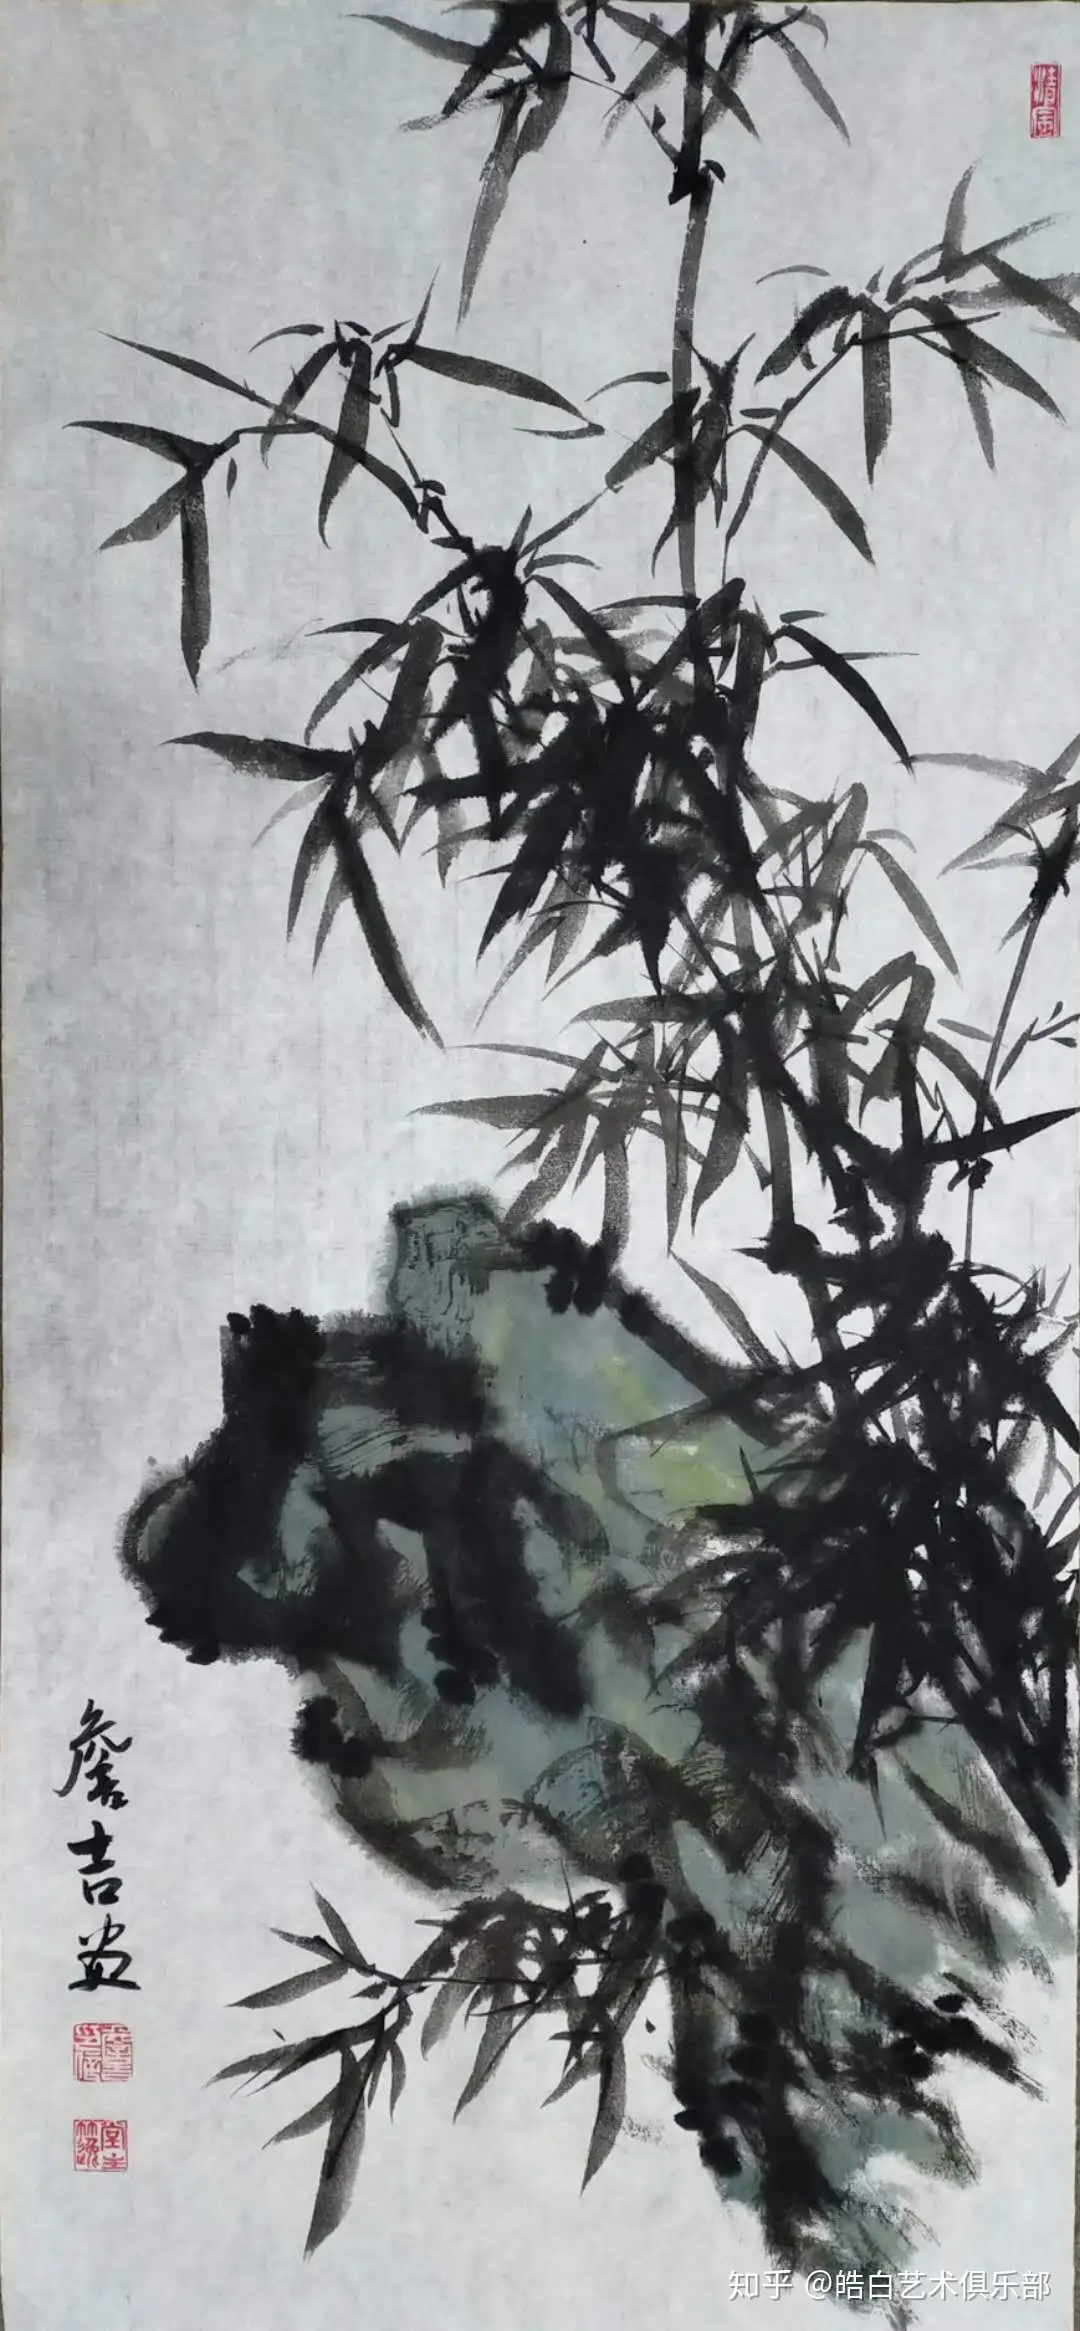 寺田春弌 「エルヌの街」 油彩25号 大作 - 絵画/タペストリ